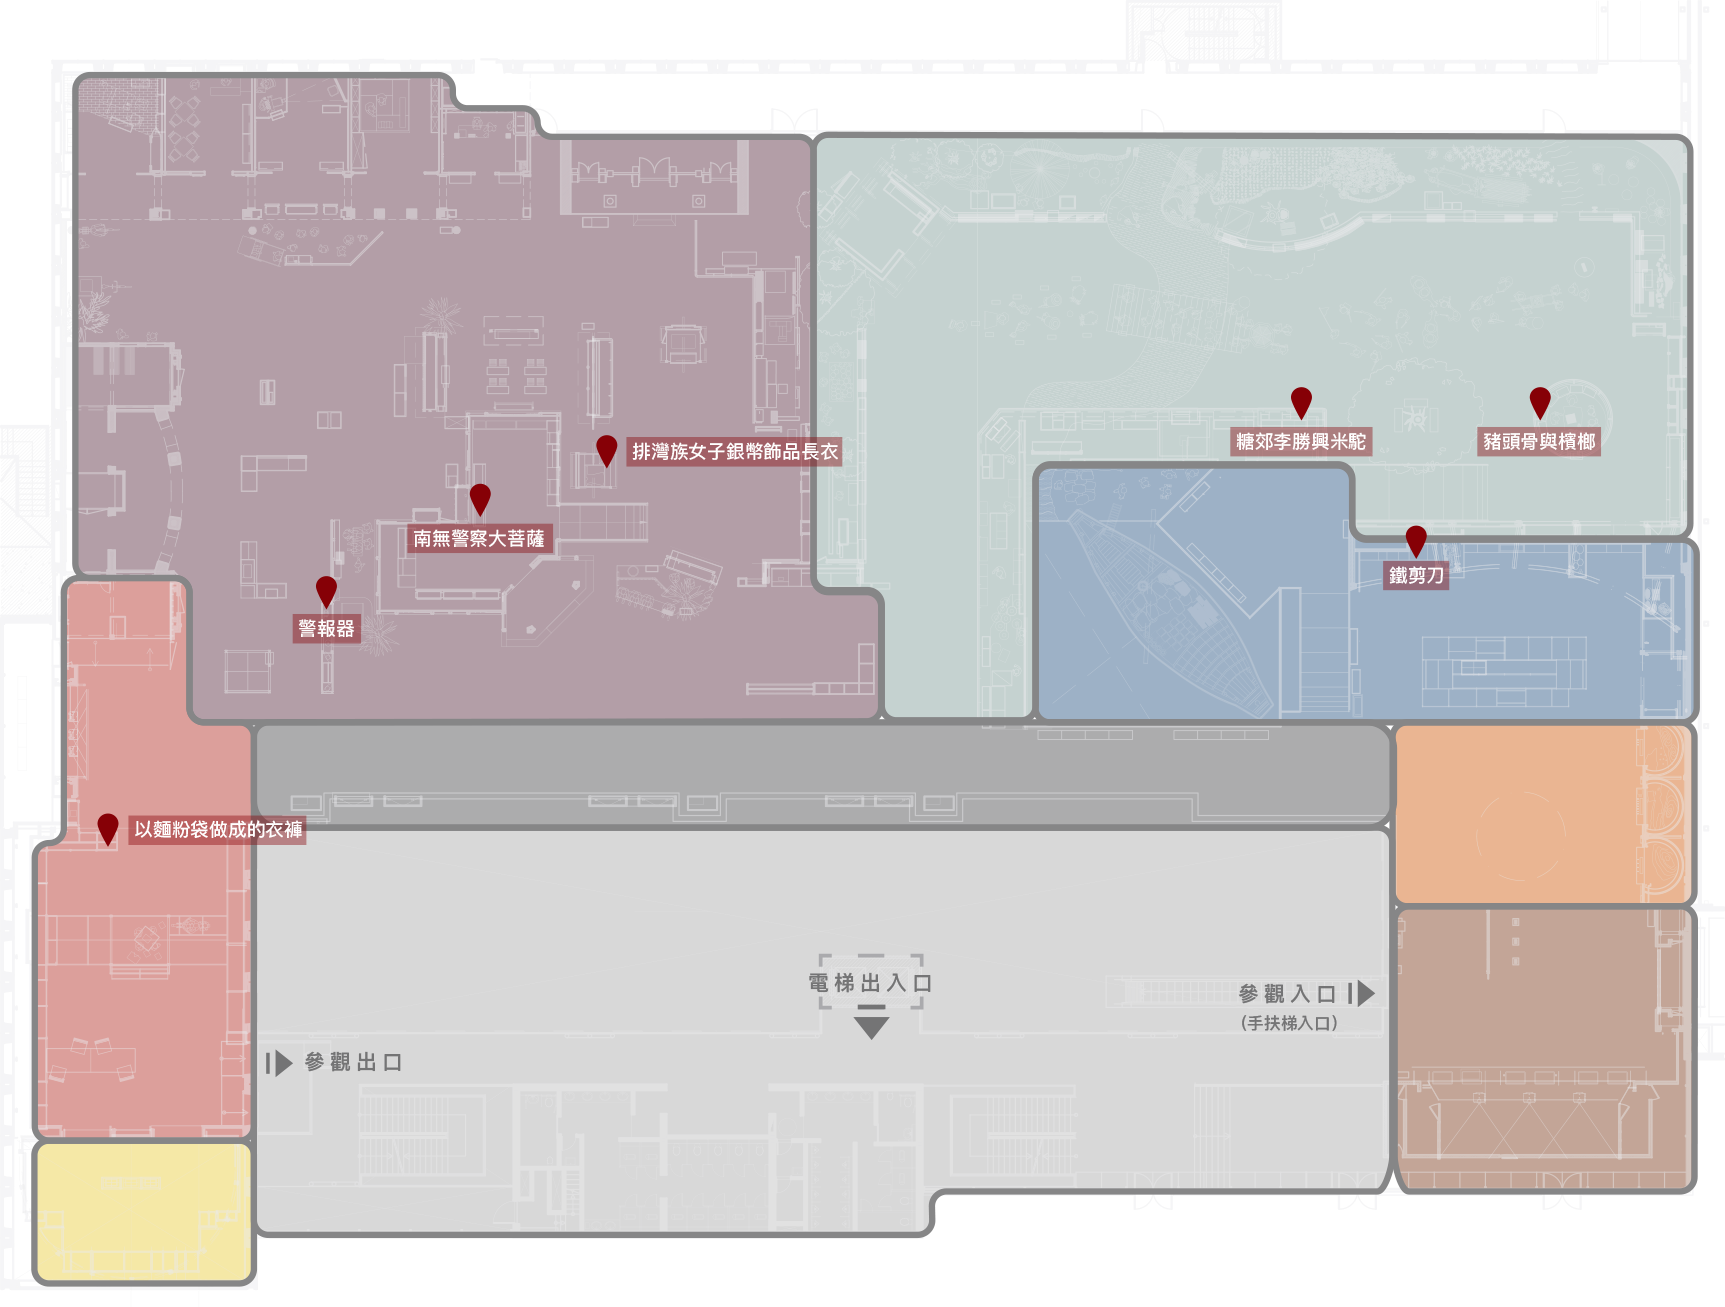 「摸」的臺灣史_展廳地圖